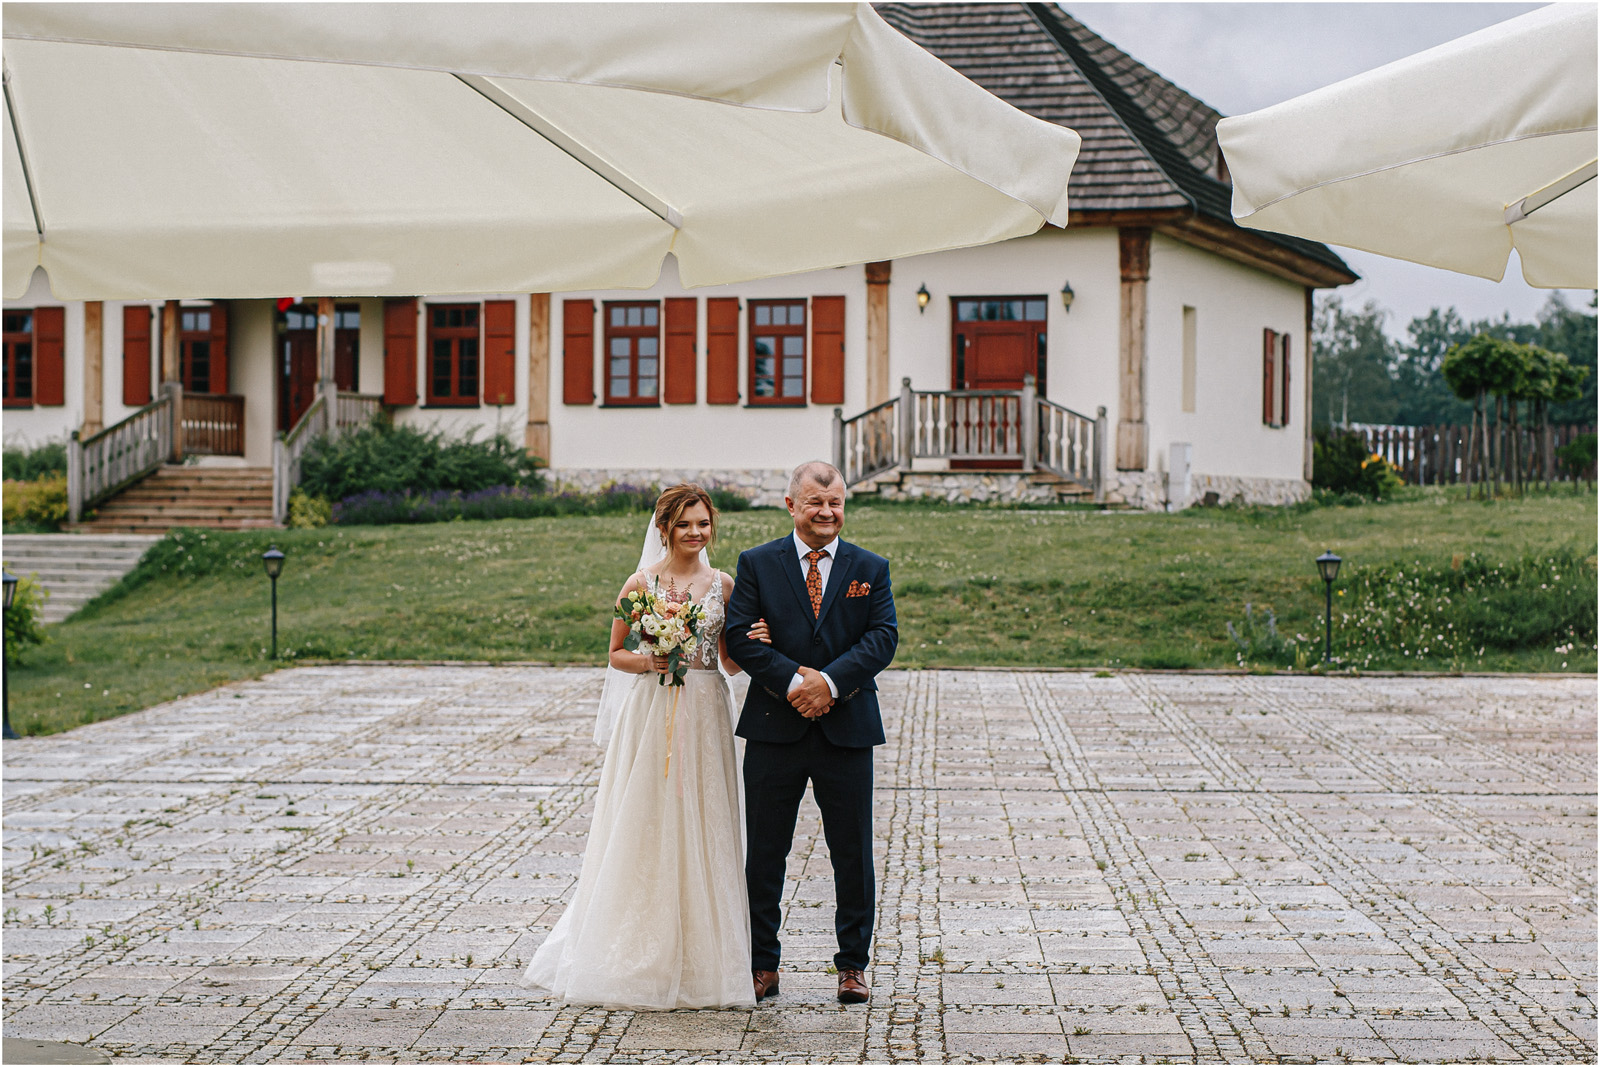 Kasia & Damian | ślub plenerowy w Kuźni Smaków i sesja w skansenie 27